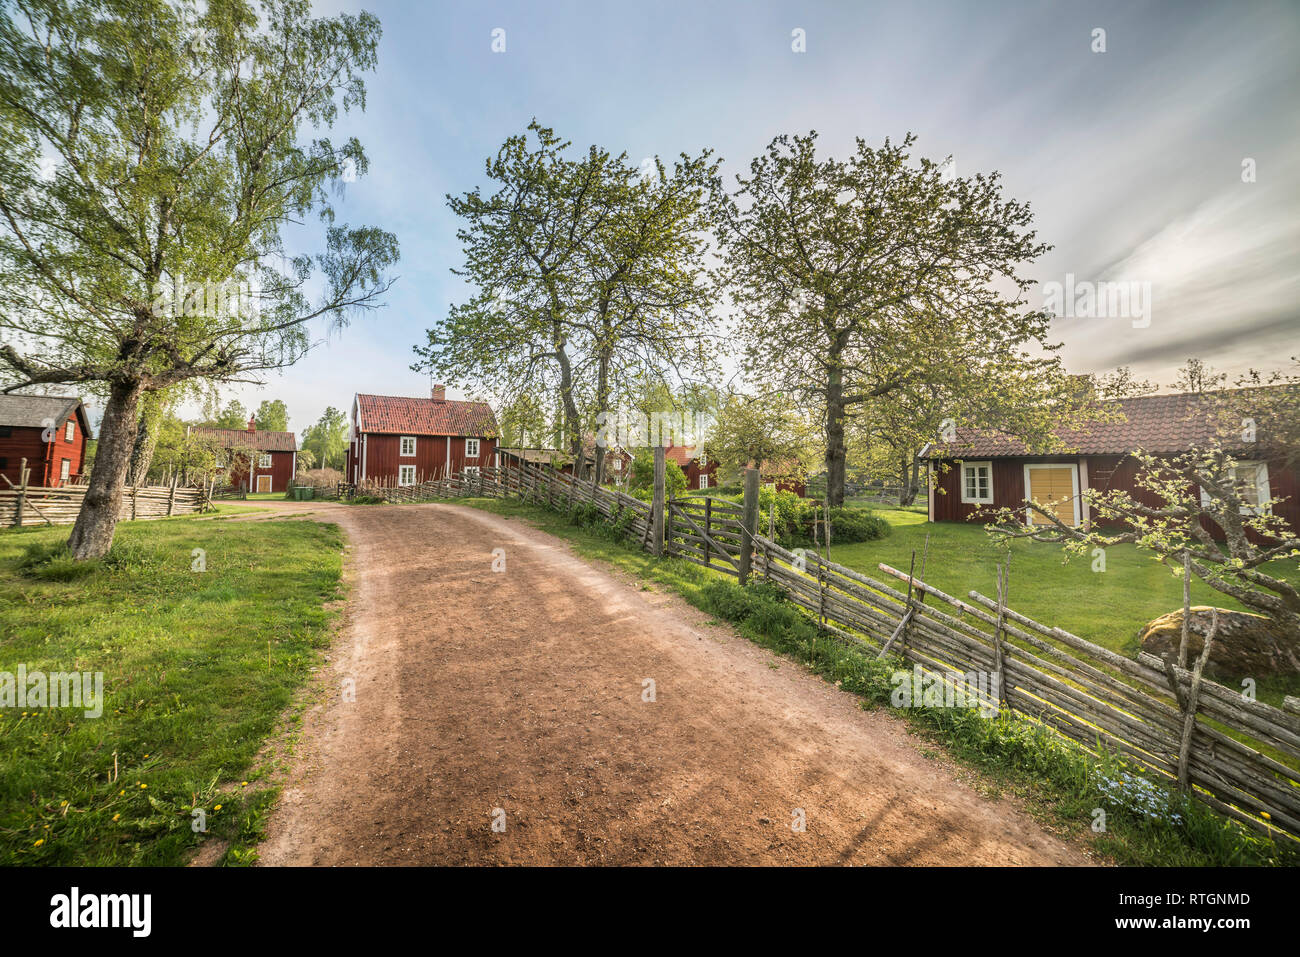 Petite route et vieux chalets traditionnels par roundpole clôture dans un paysage rural au village par Stensjo. Pays-bas, Suède, Scandinavie Banque D'Images